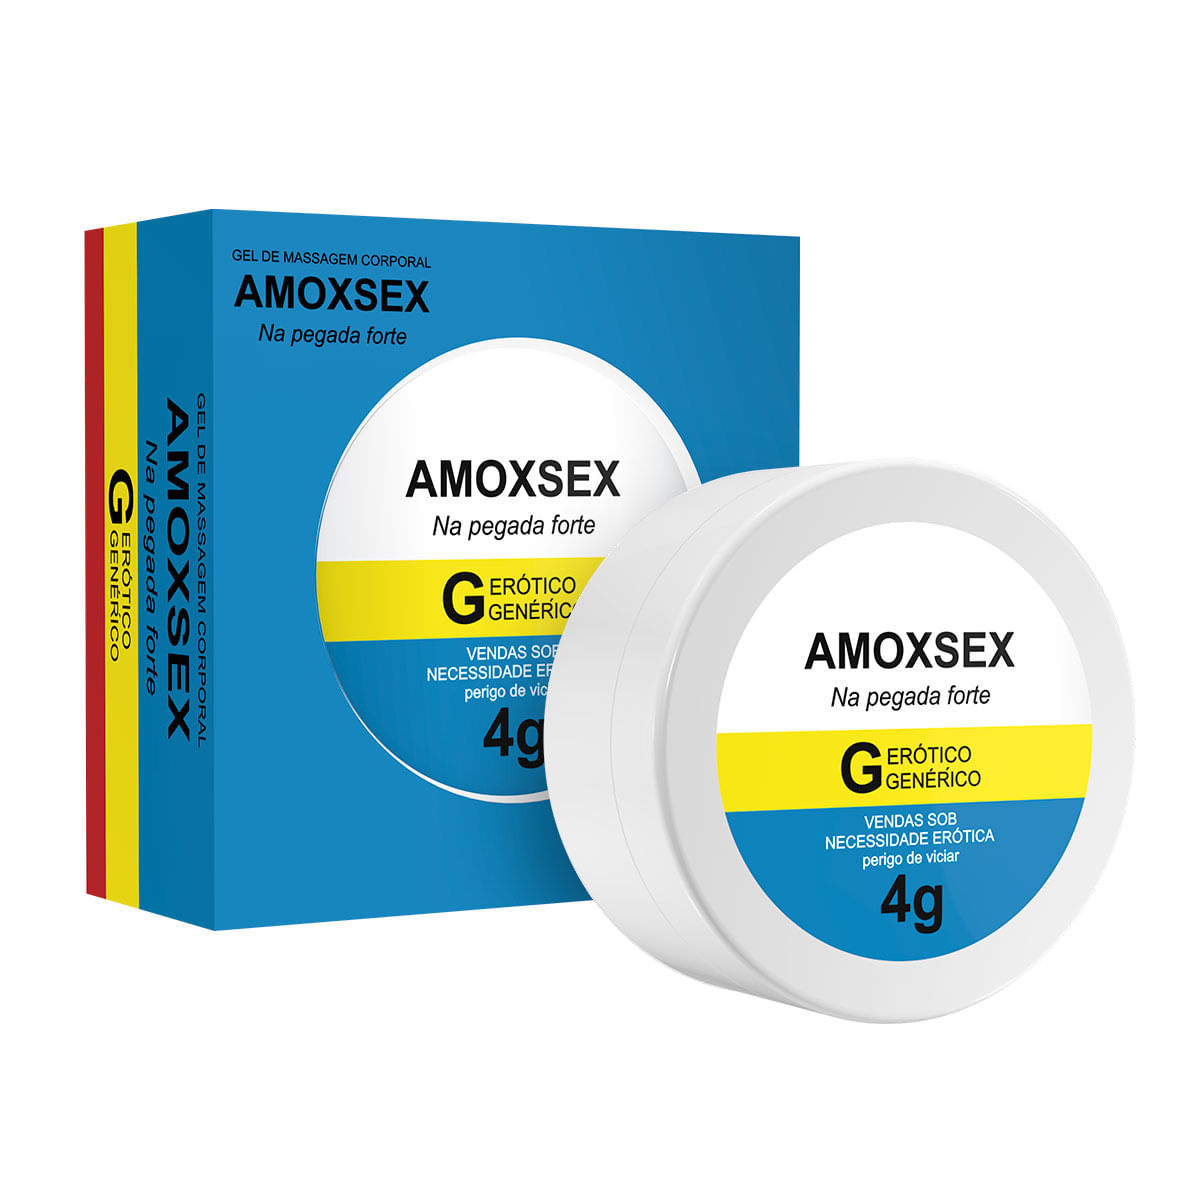 Amoxsex Creme Dessensibilizante Anal 4g Linha Farmacinha do Riso Secret Love